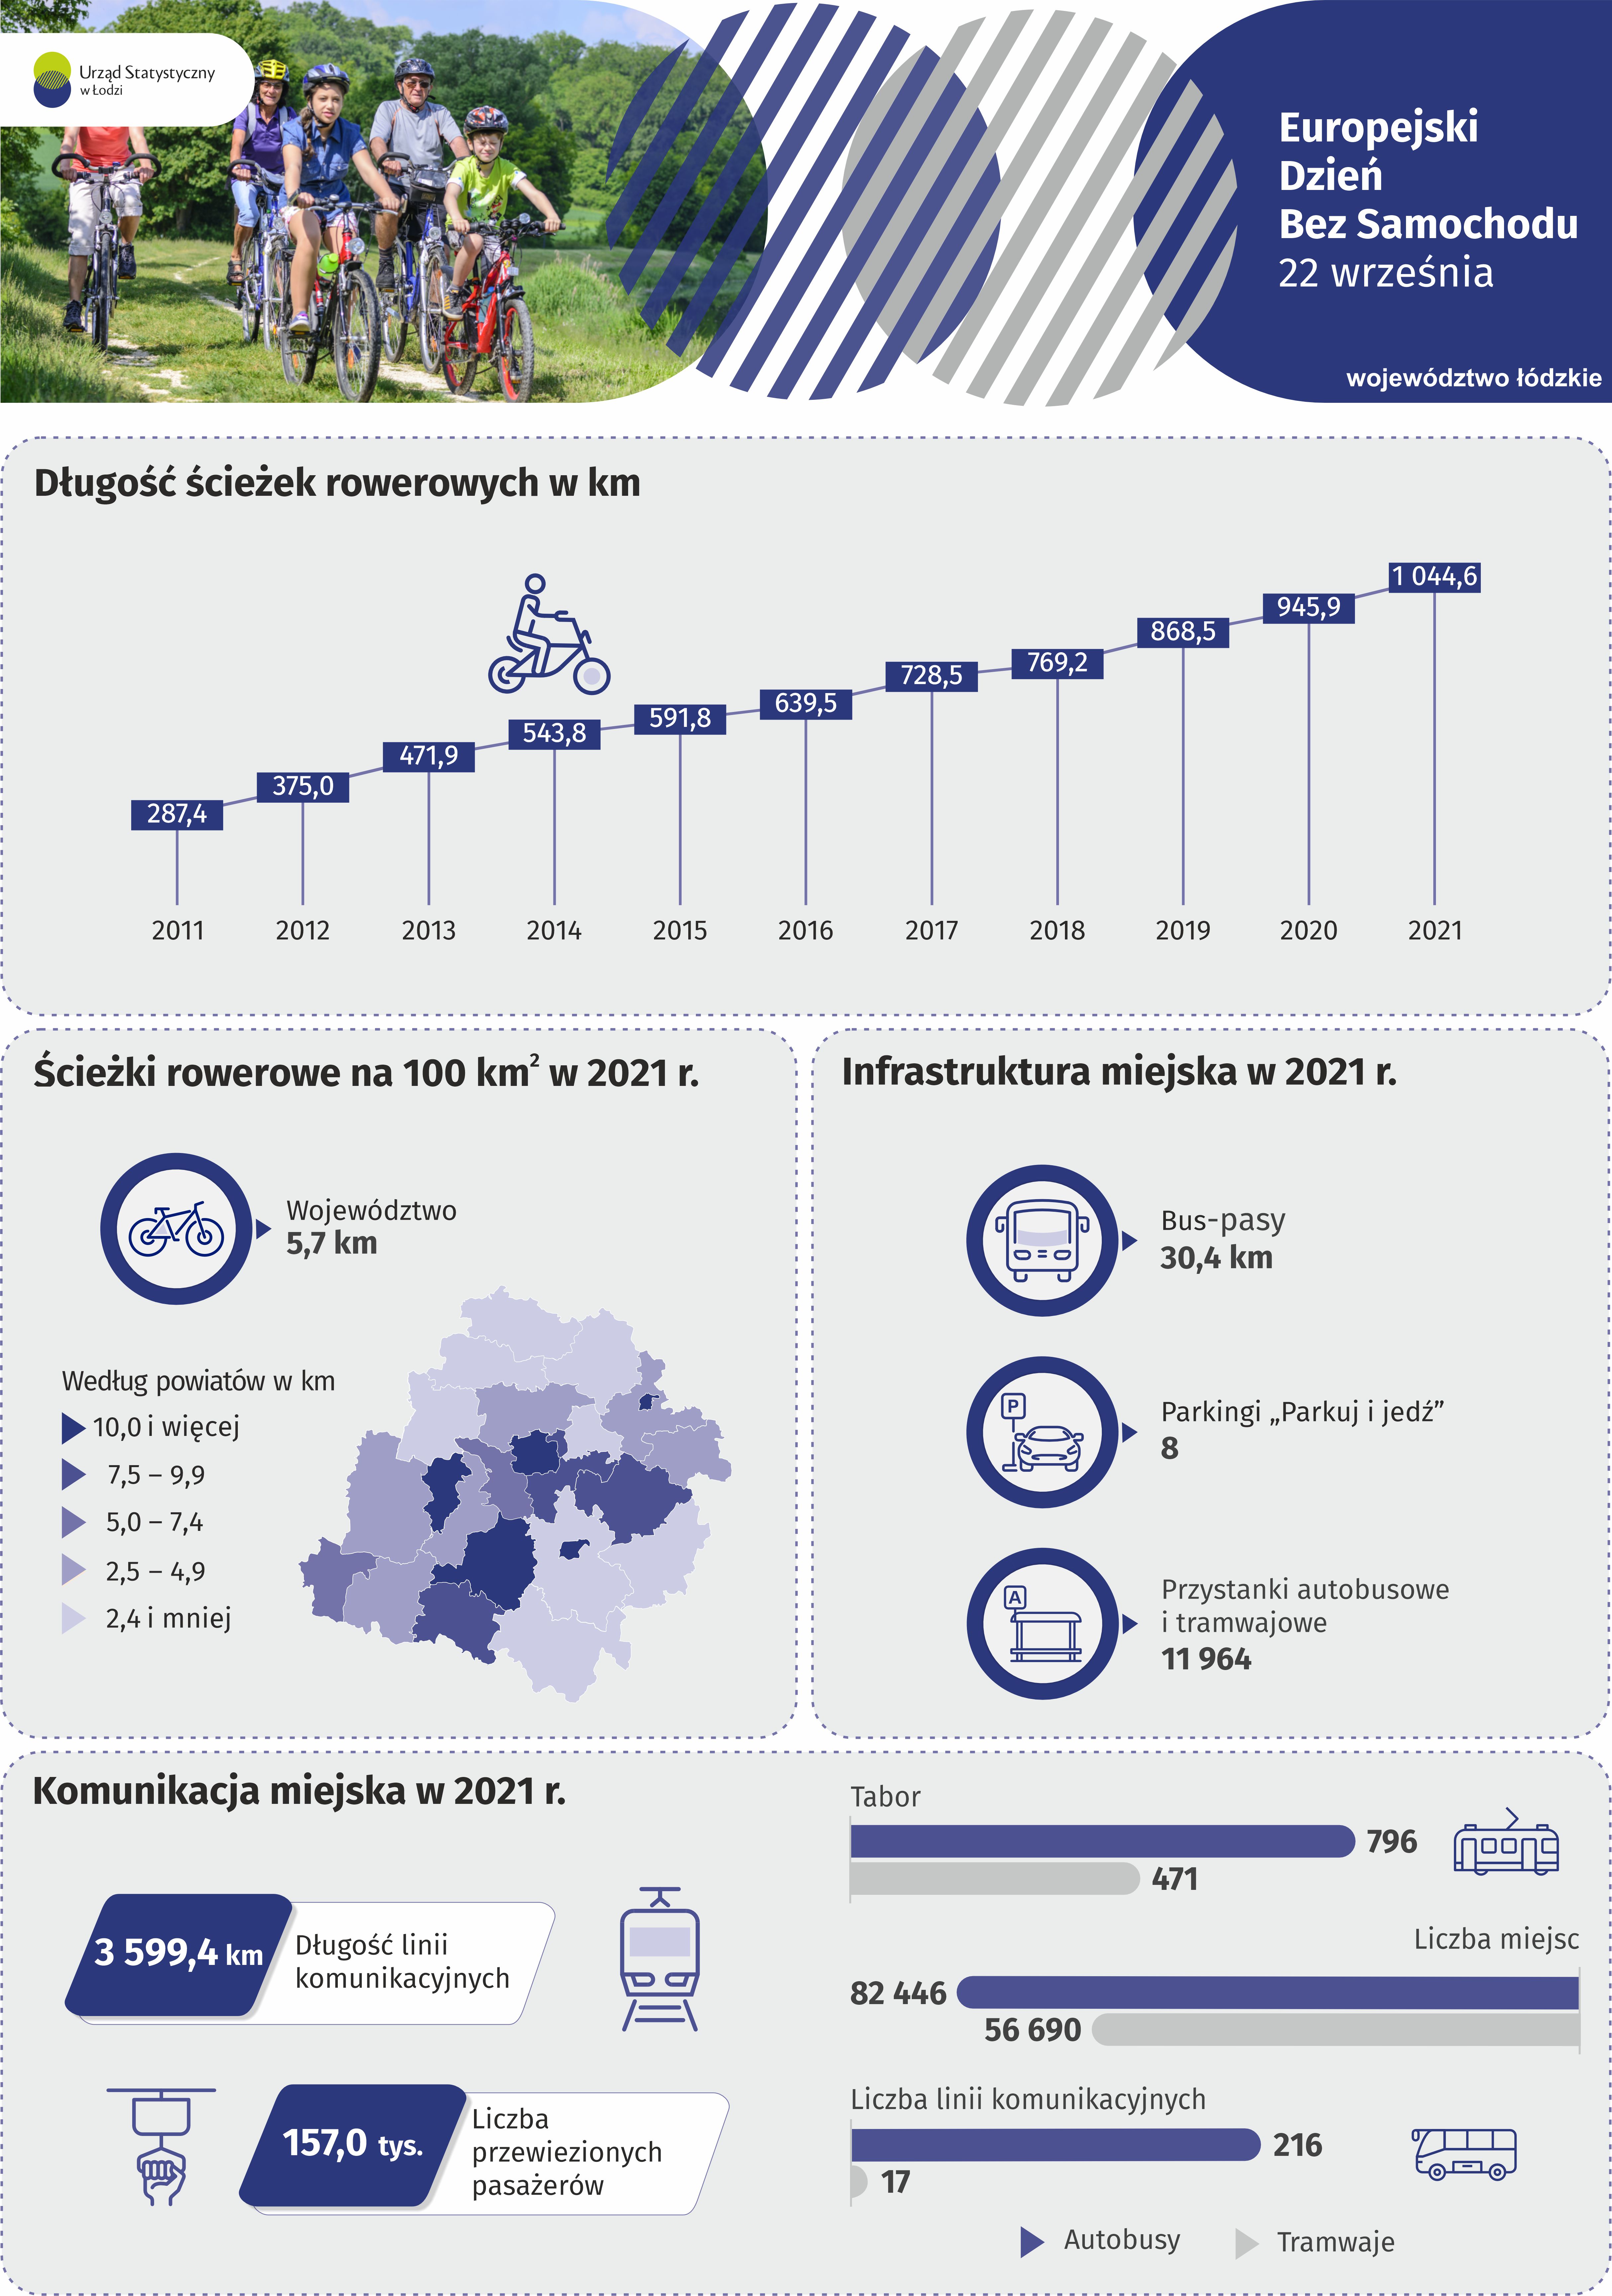 Infografika na Europejski Dzień Bez Samochodu przedstawiająca dane za 2021 r. odnośnie ścieżek rowerowych, infrastruktury miejskiej oraz komunikacji miejskiej w województwie łódzkim.